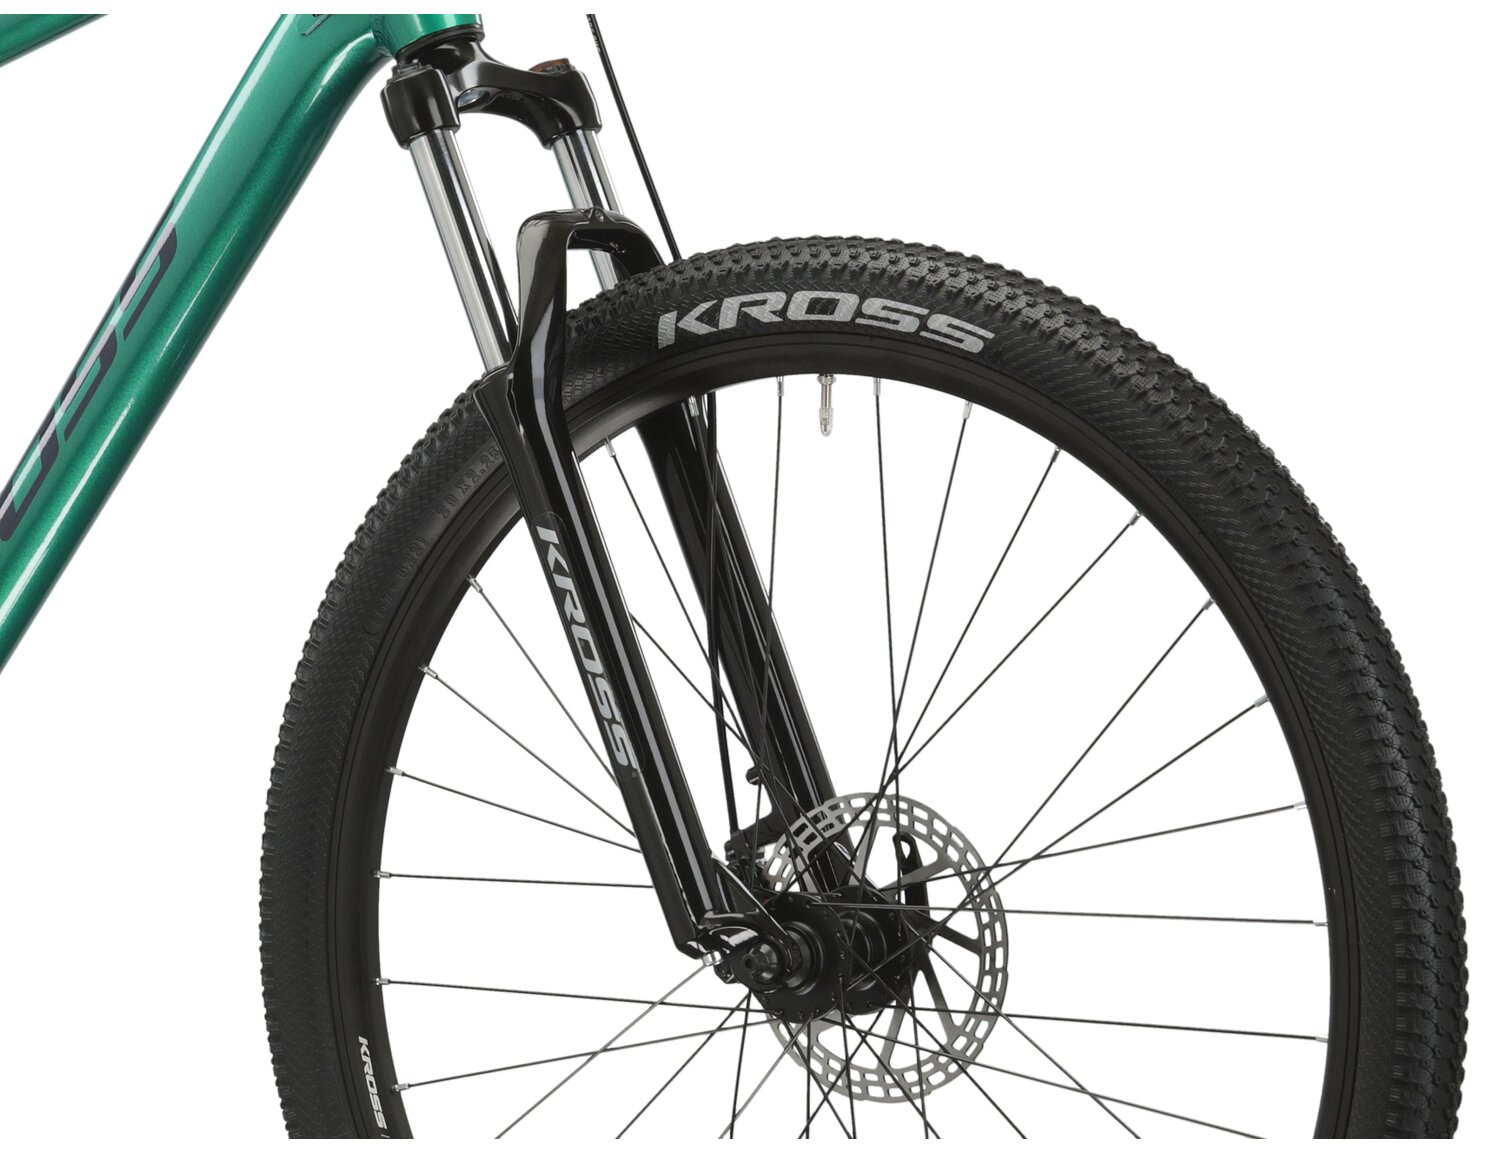  Aluminowa rama, amortyzowany widelec o skoku 100mm oraz opony o szerokości 2,25 cala w rowerze górskim MTB KROSS Hexagon 3.0 